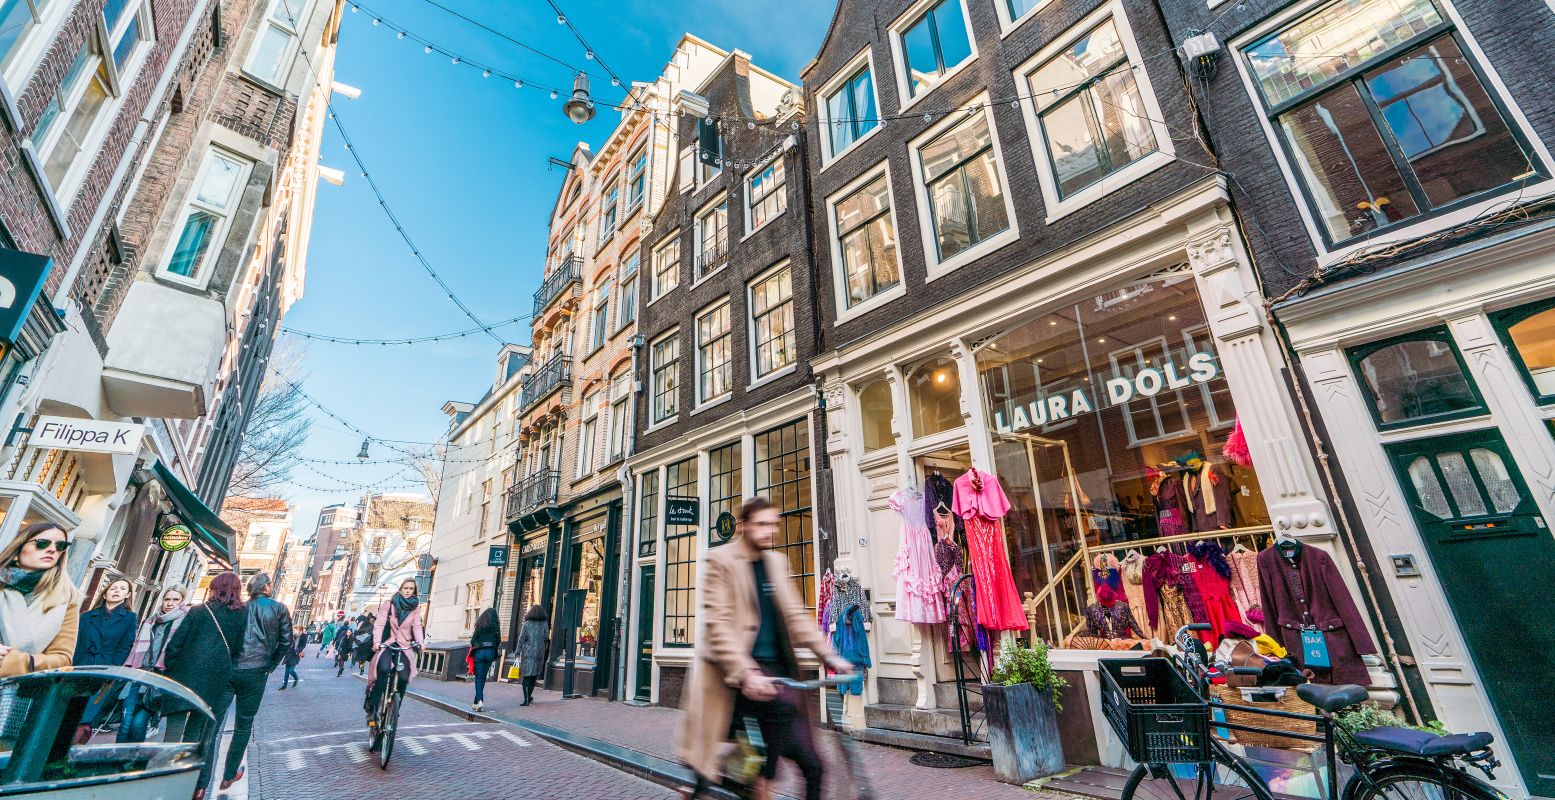 De altijd gezellige 9 straatjes van Amsterdam. Foto: amsterdam&partners © Koen Smilde